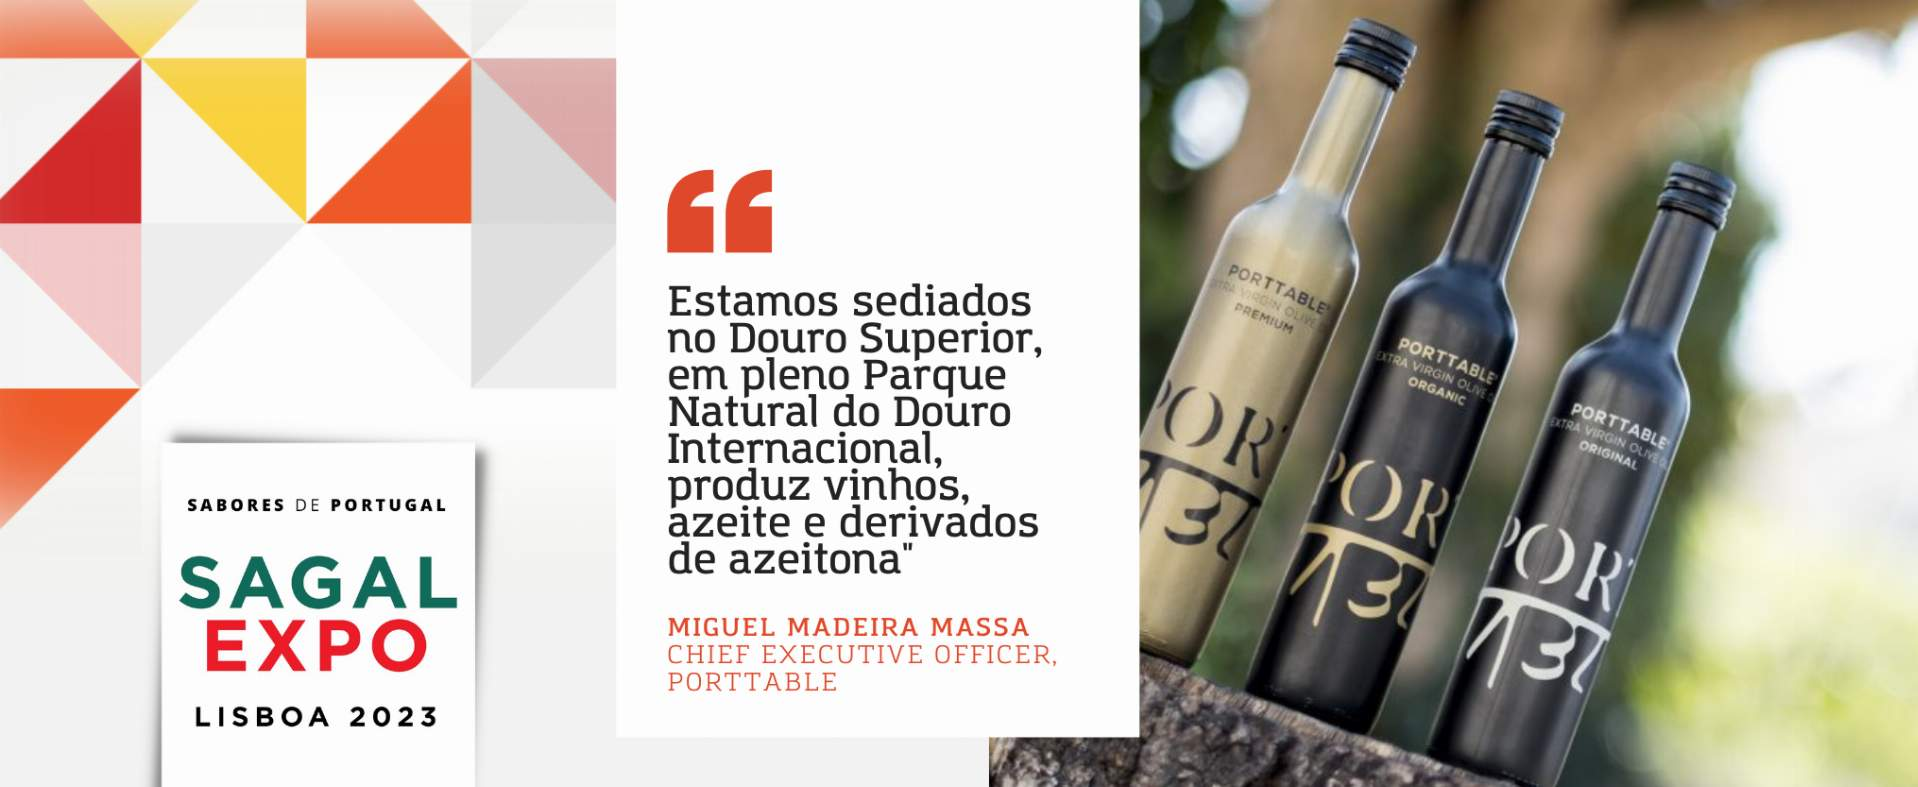 Porttable: “Estamos sediados no Douro Superior, em pleno Parque Natural do Douro Internacional, produz vinhos, azeite e derivados de azeitona"